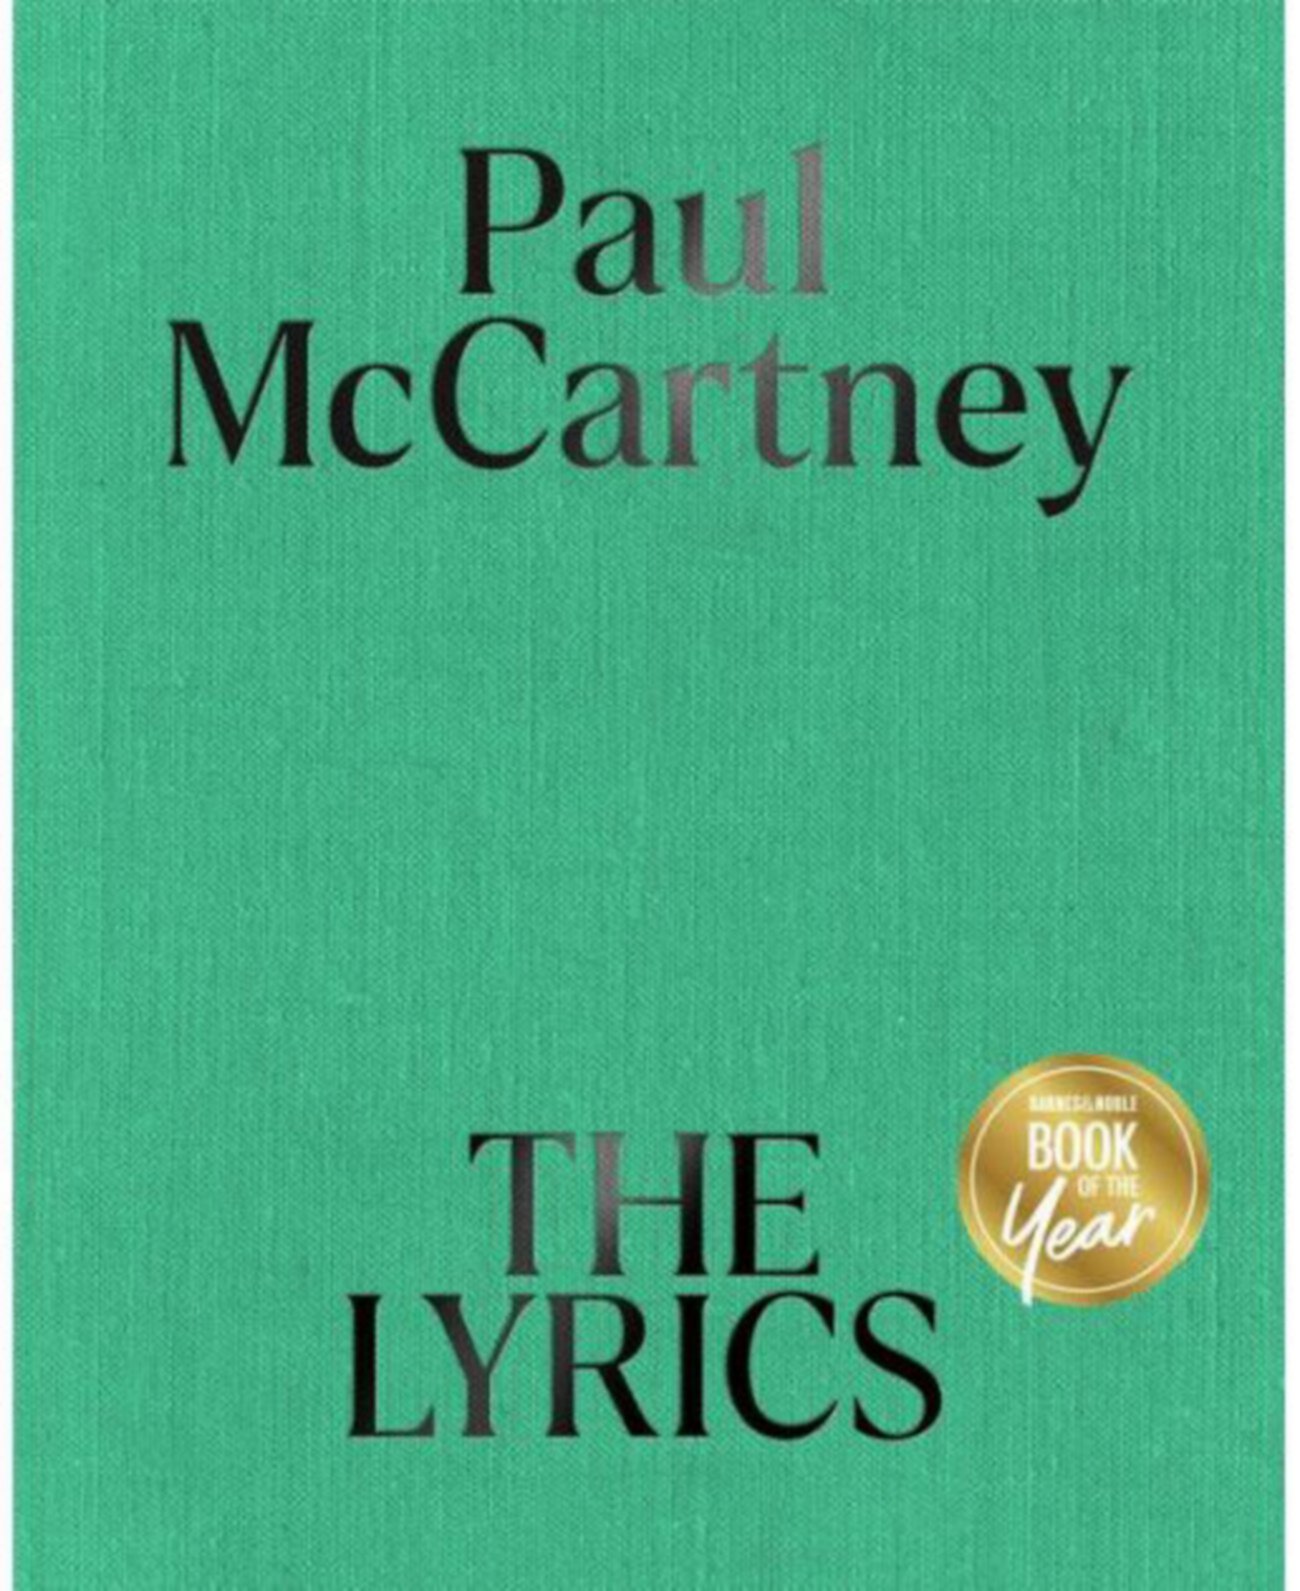 Тексты: Пол Маккартни с 1956 года по настоящее время (двухтомник) (Книга года B&N) Barnes & Noble